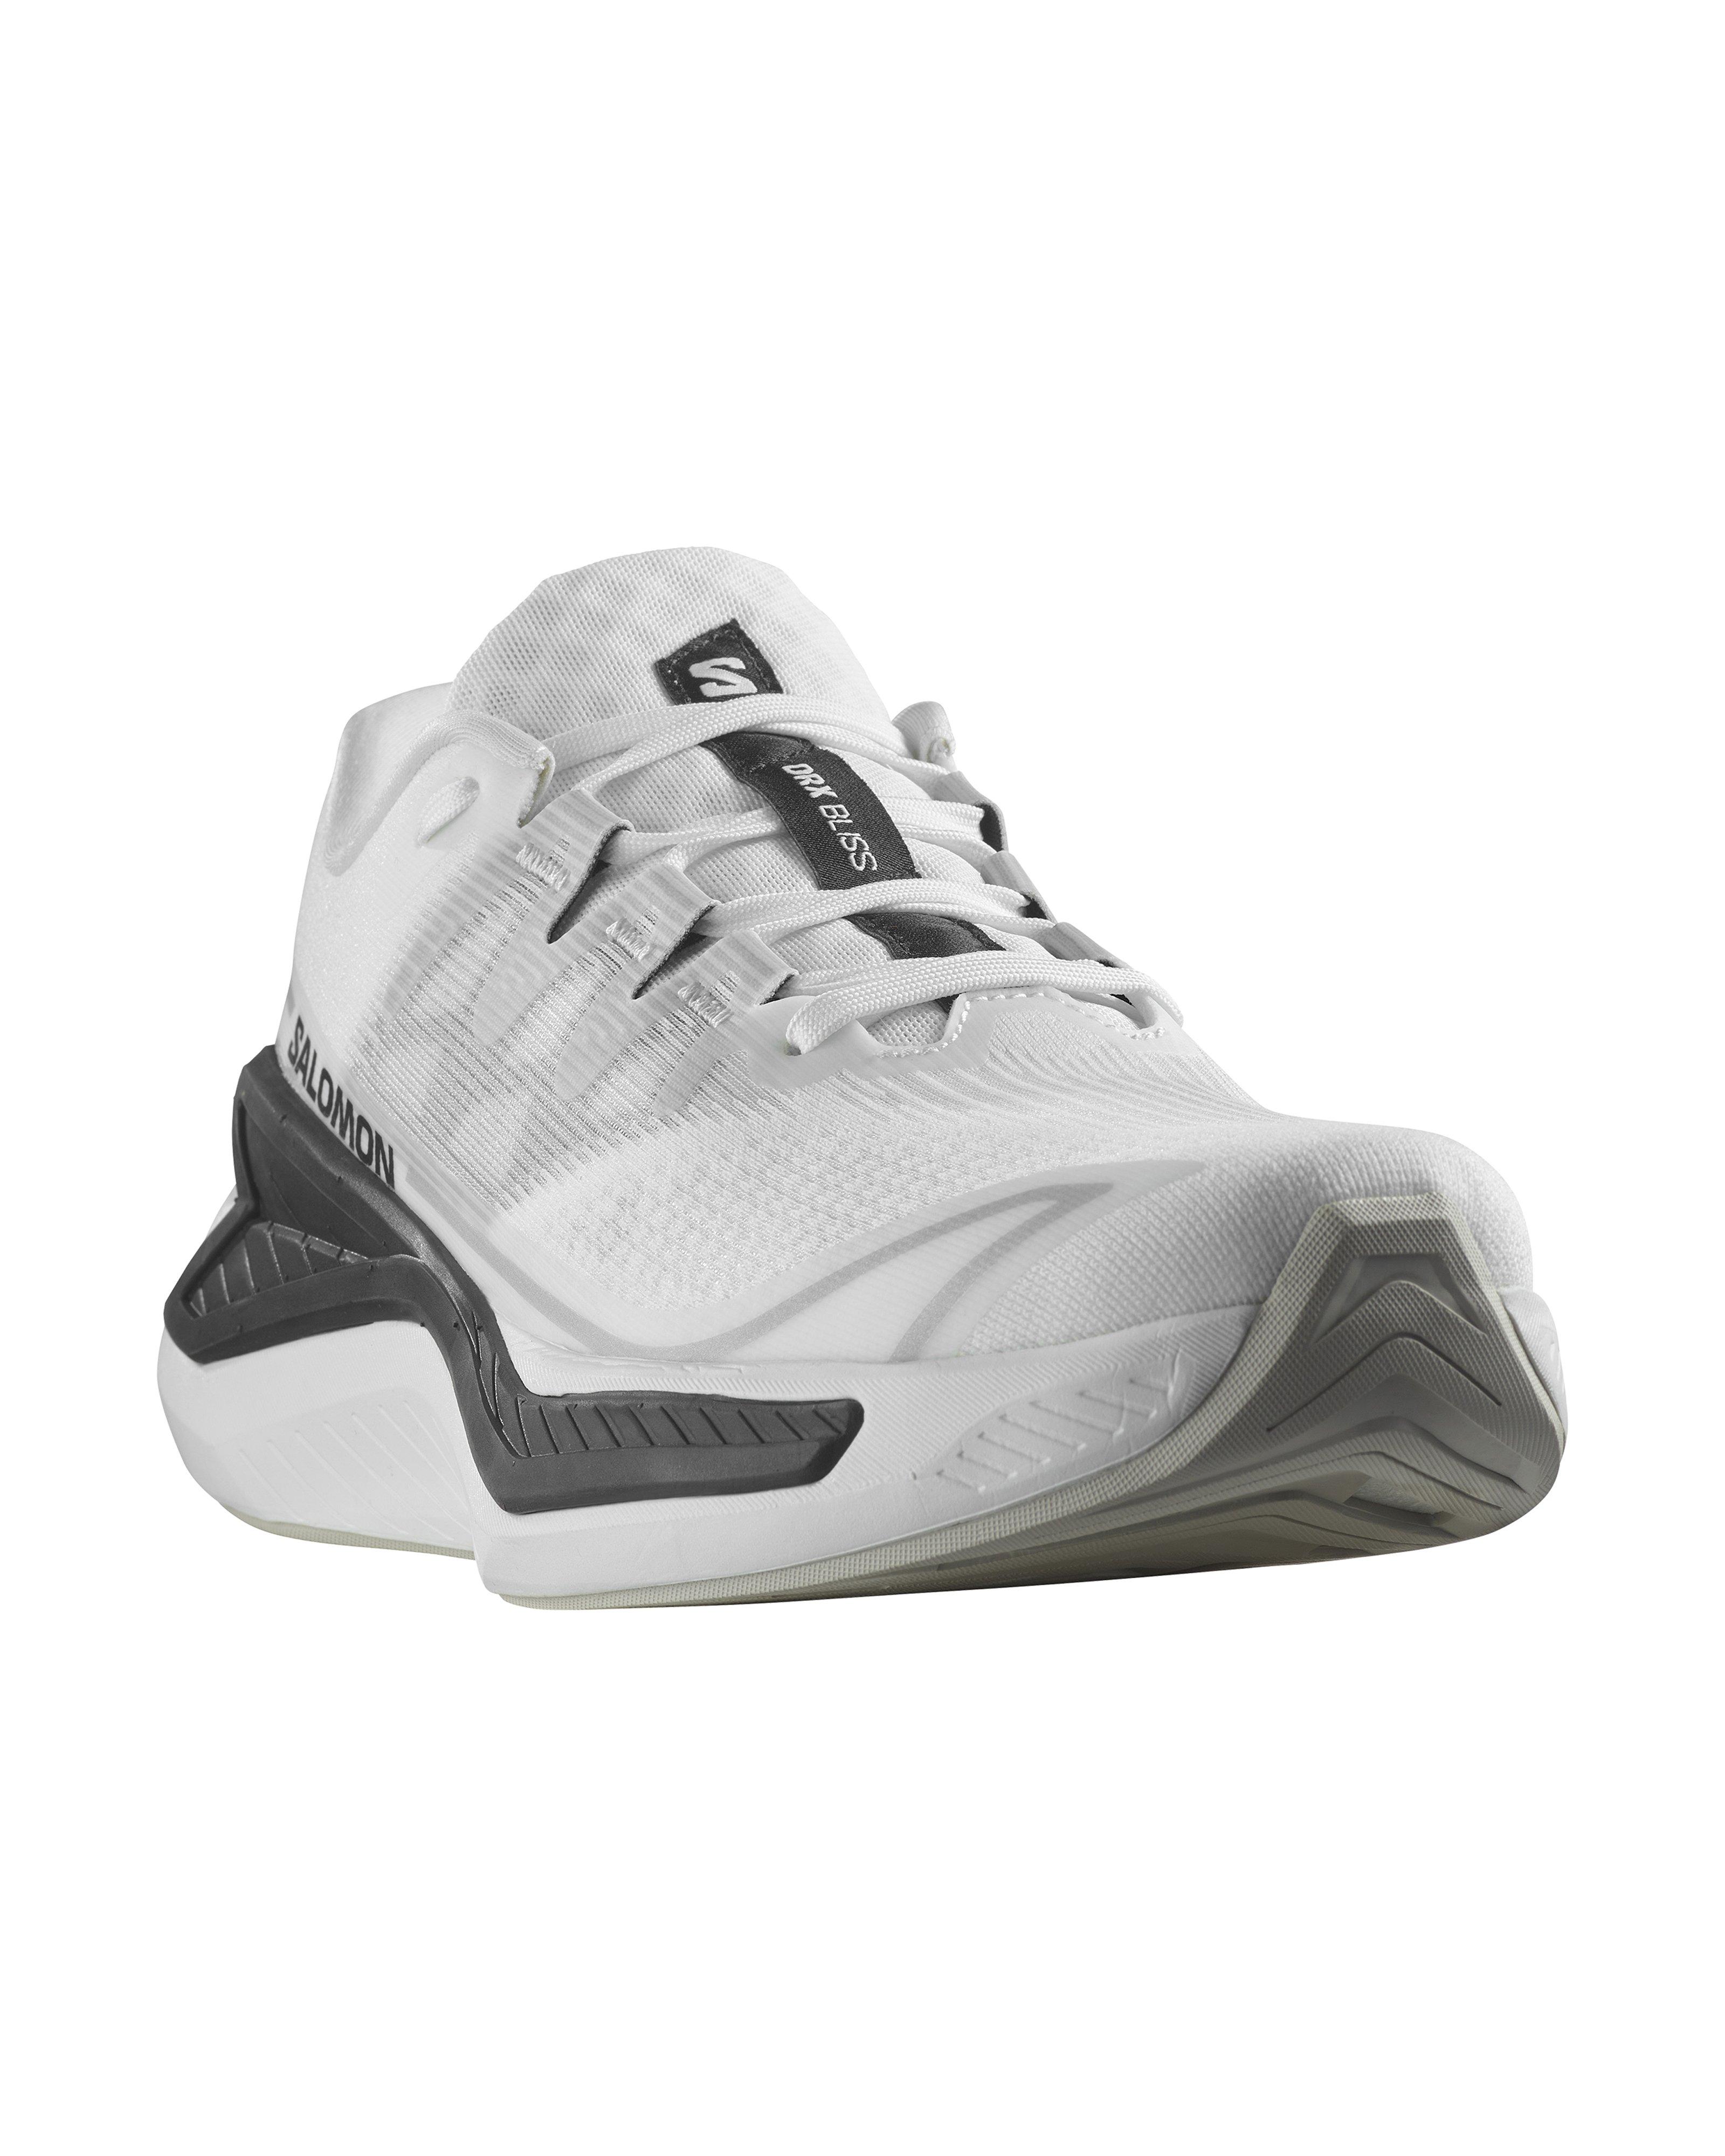 Salomon Men’s DRX Bliss Road Running Shoes  -  White